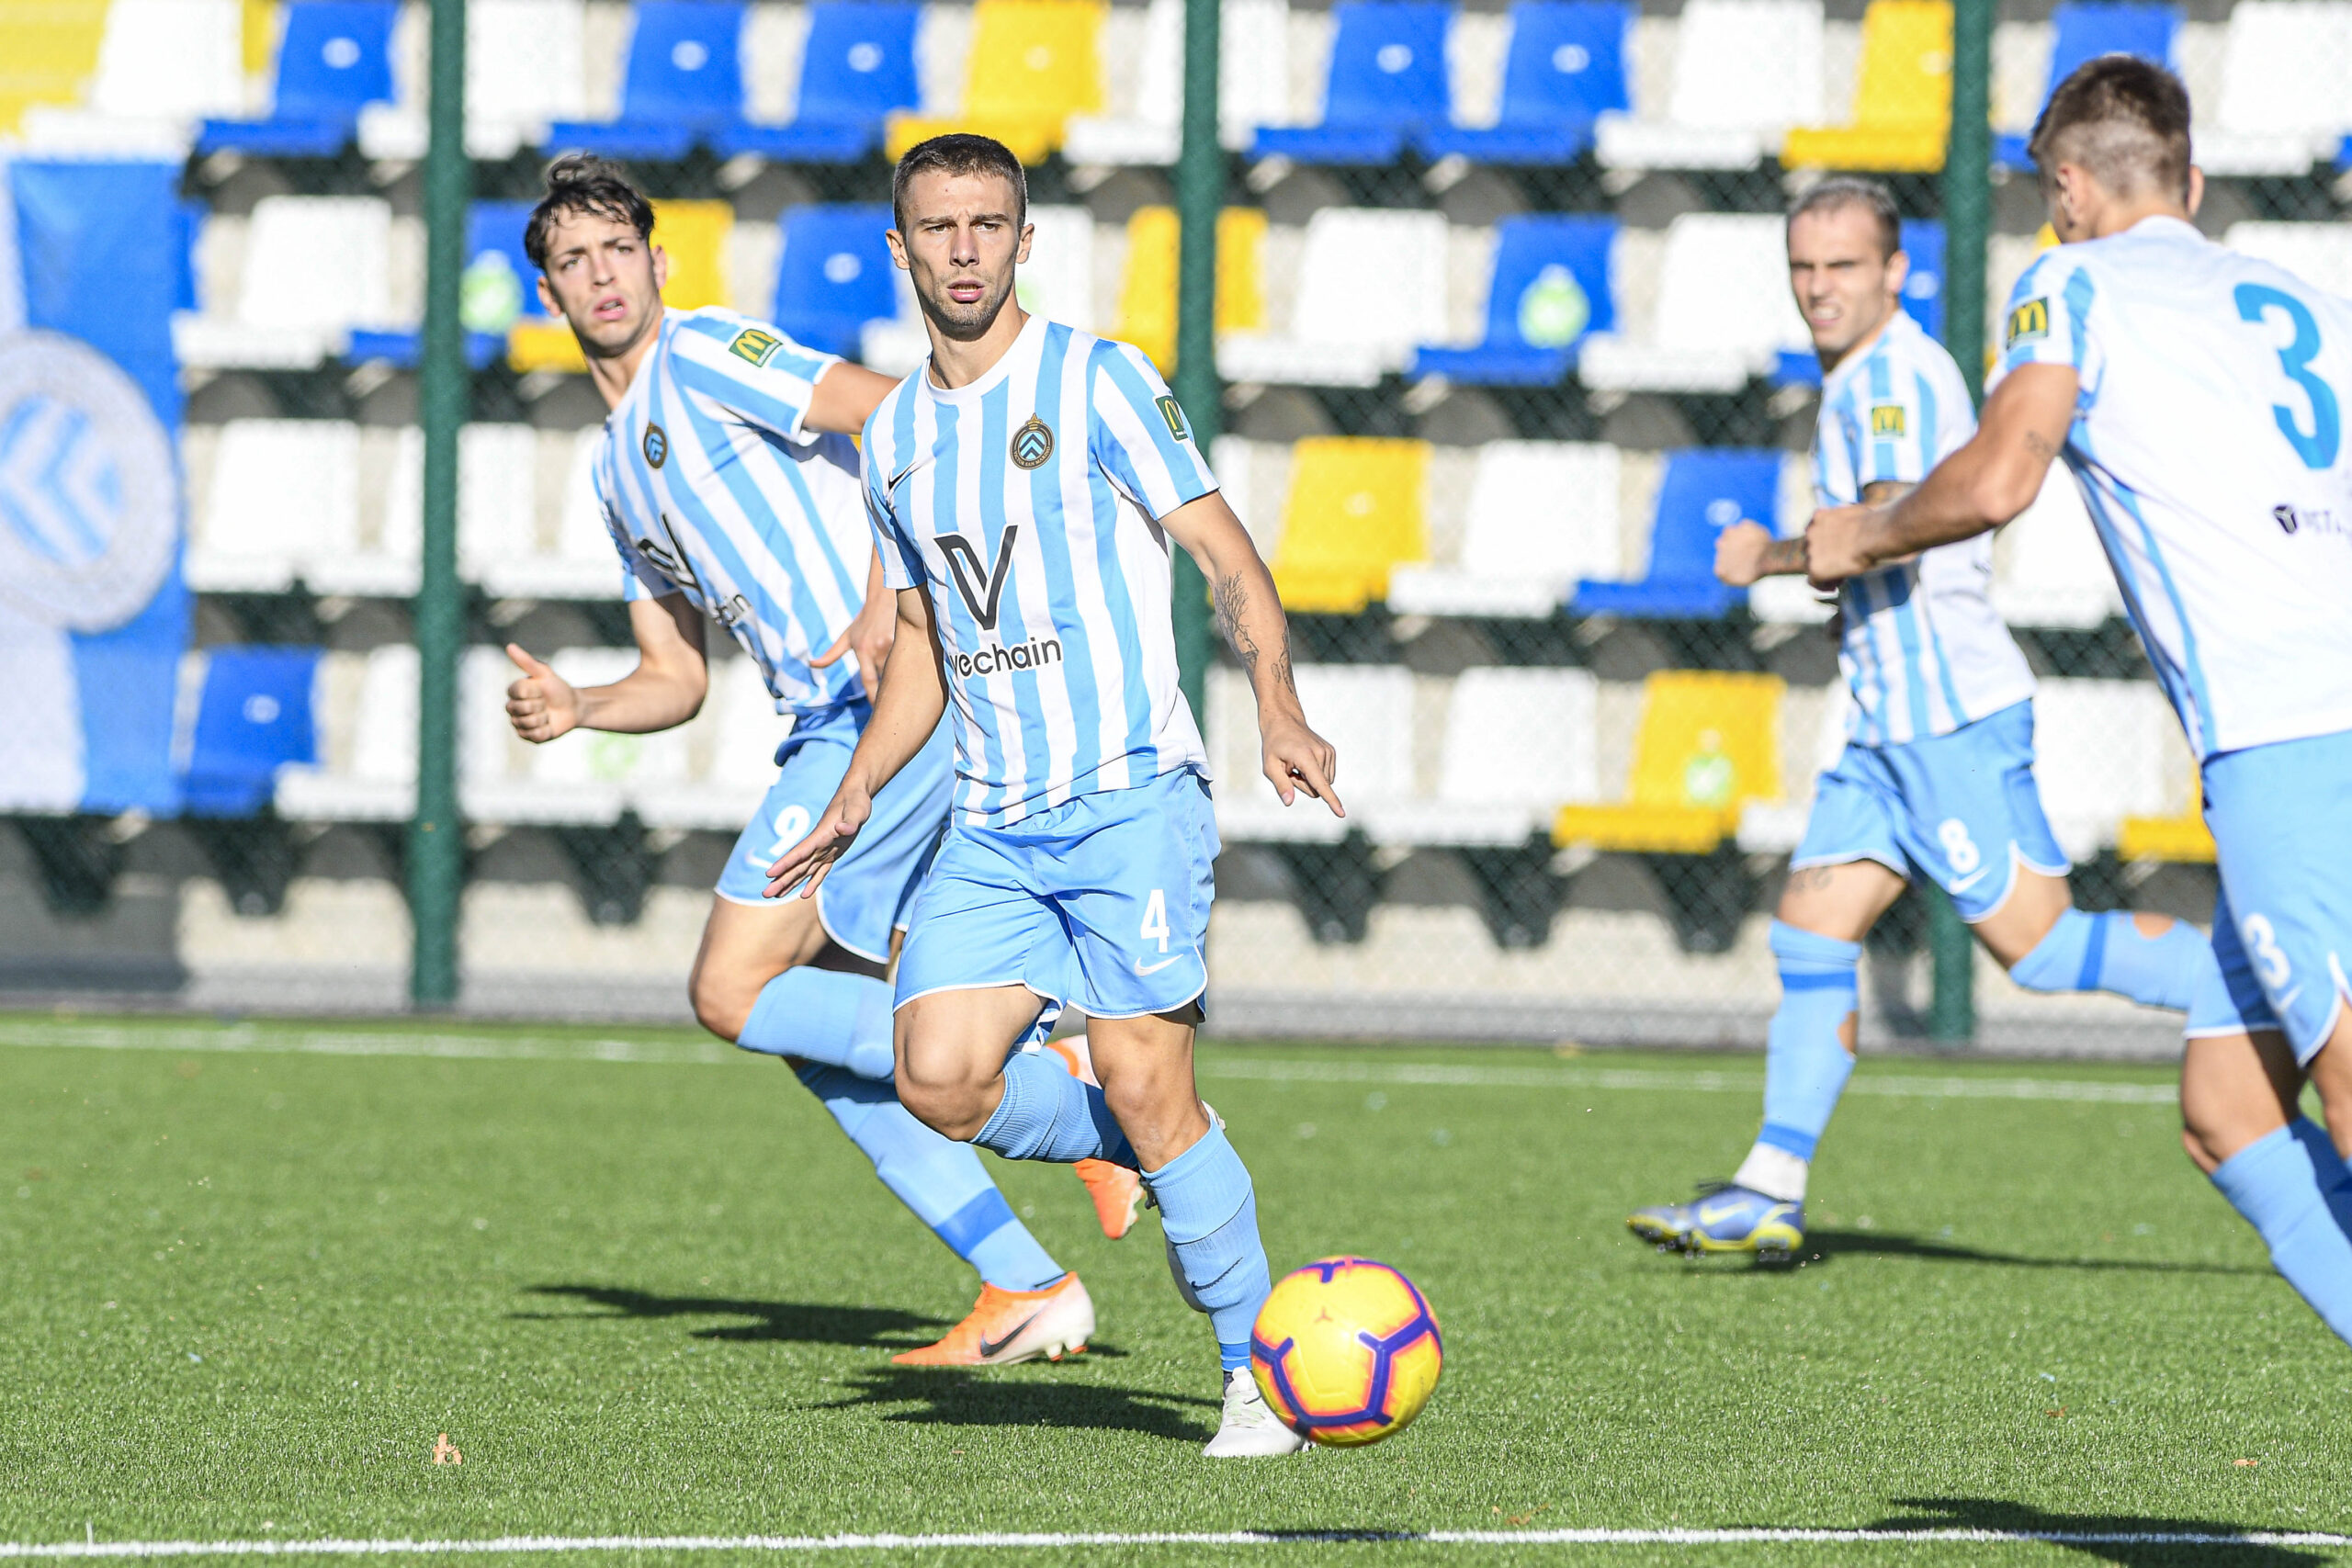 Calcio, il Victor San Marino pareggia per la prima volta in Eccellenza: 0-0 nella tana del Masi Torello Voghiera